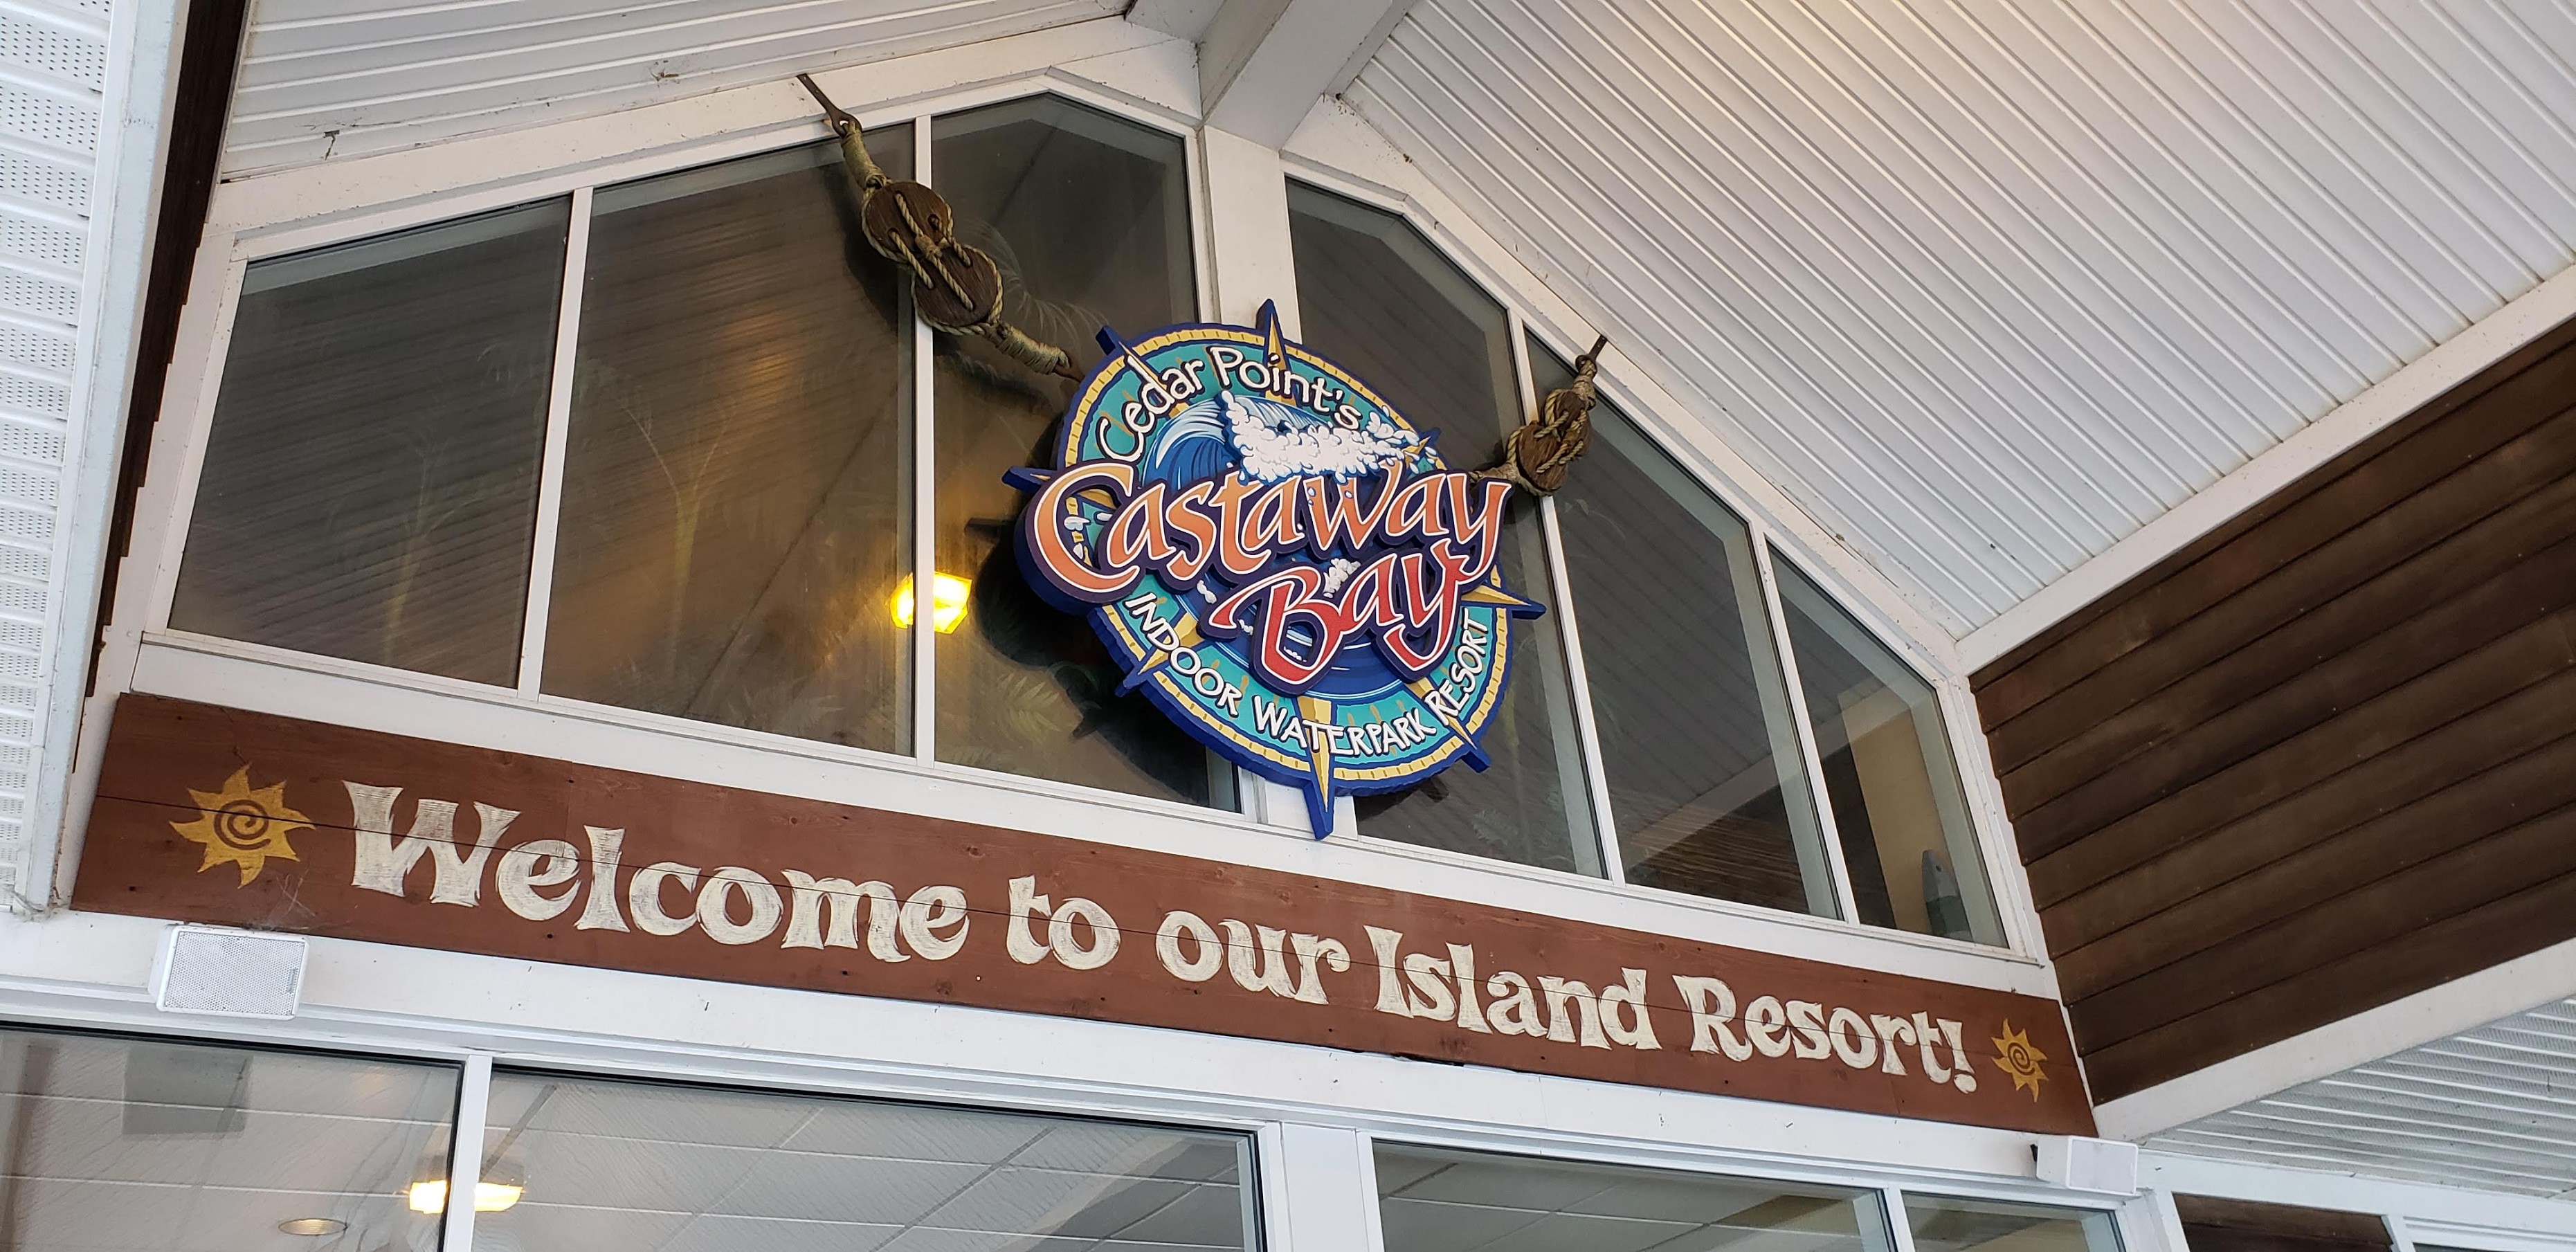 A Winter Getaway at Castaway Bay + GIVEAWAY